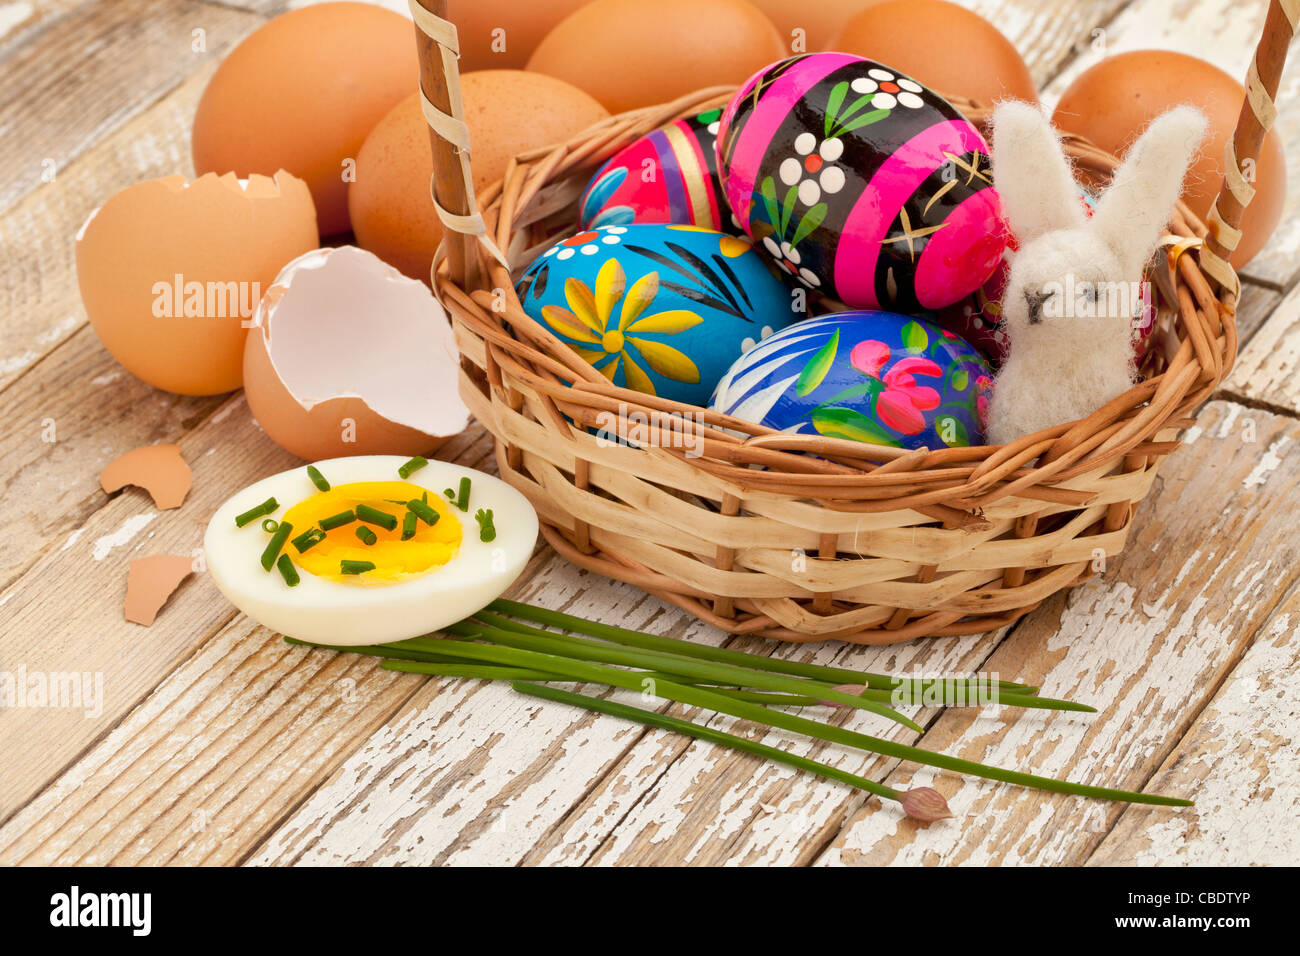 Concepto de decoración de Pascua - Huevos de Pascua pintados, huevos de gallina con cebolleta verde y el conejito de lana en una cesta Foto de stock